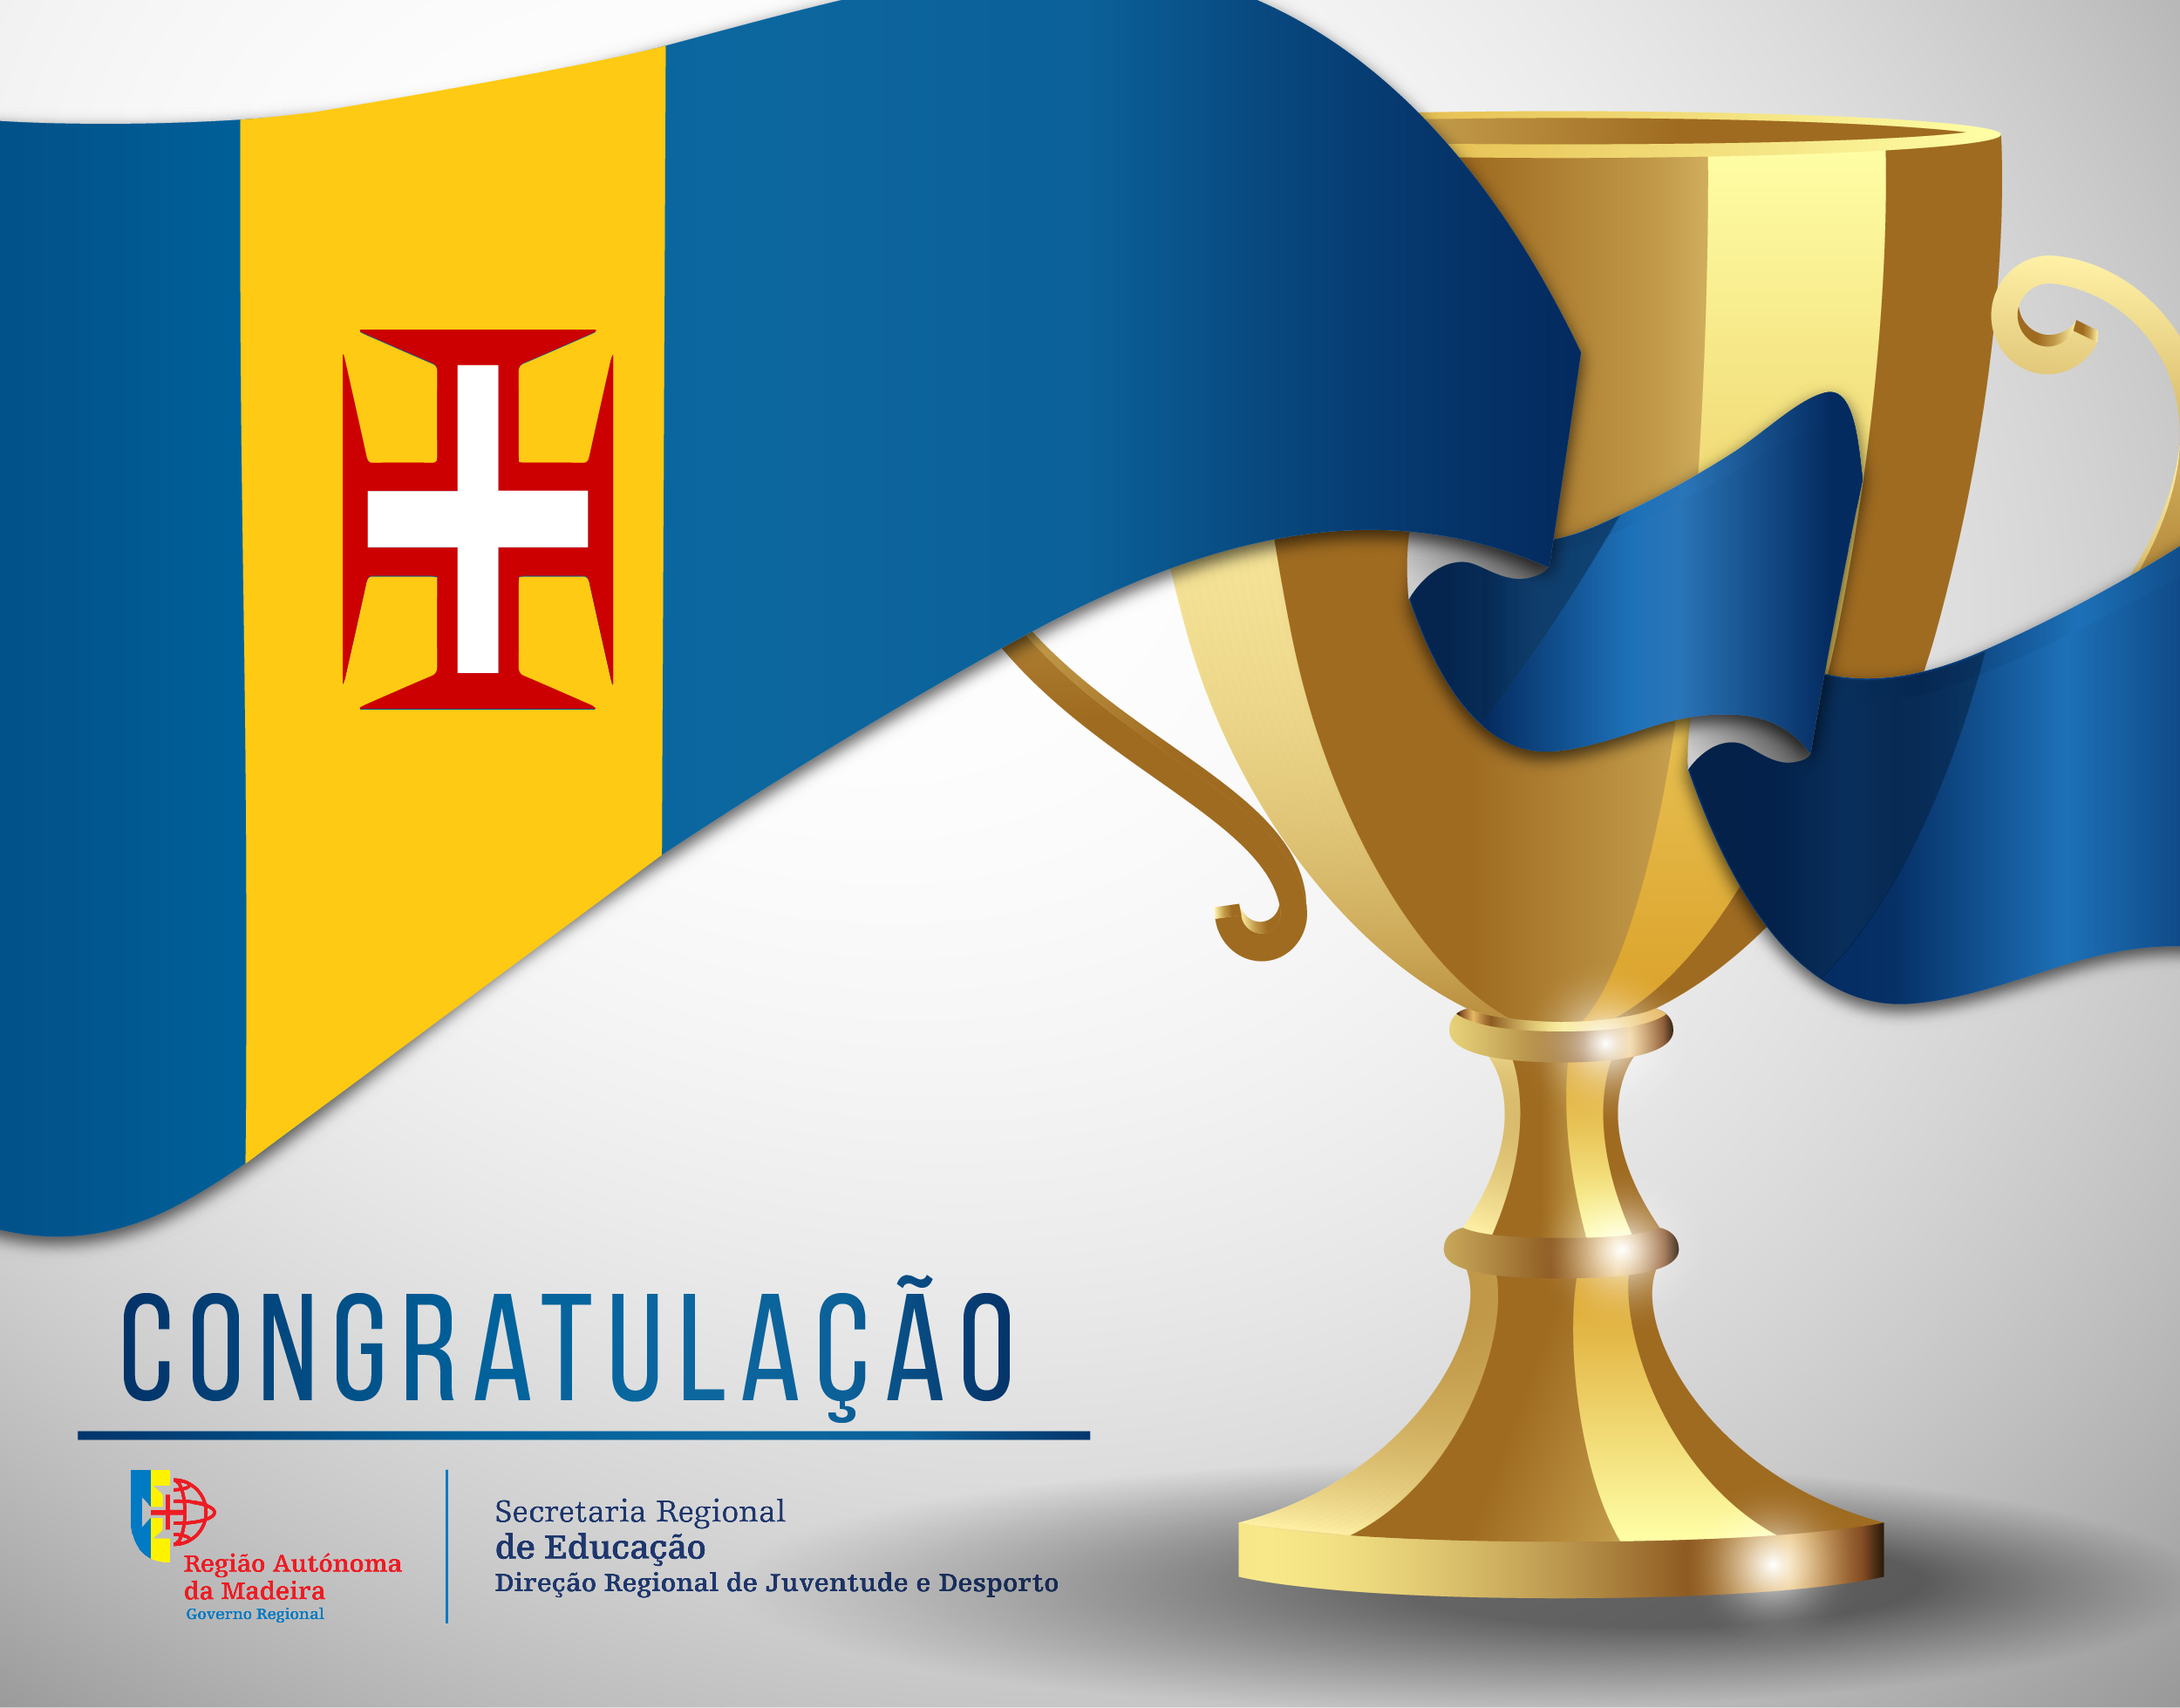 Congratulação - Verónica Rodriguez (Clube Naval do Funchal)